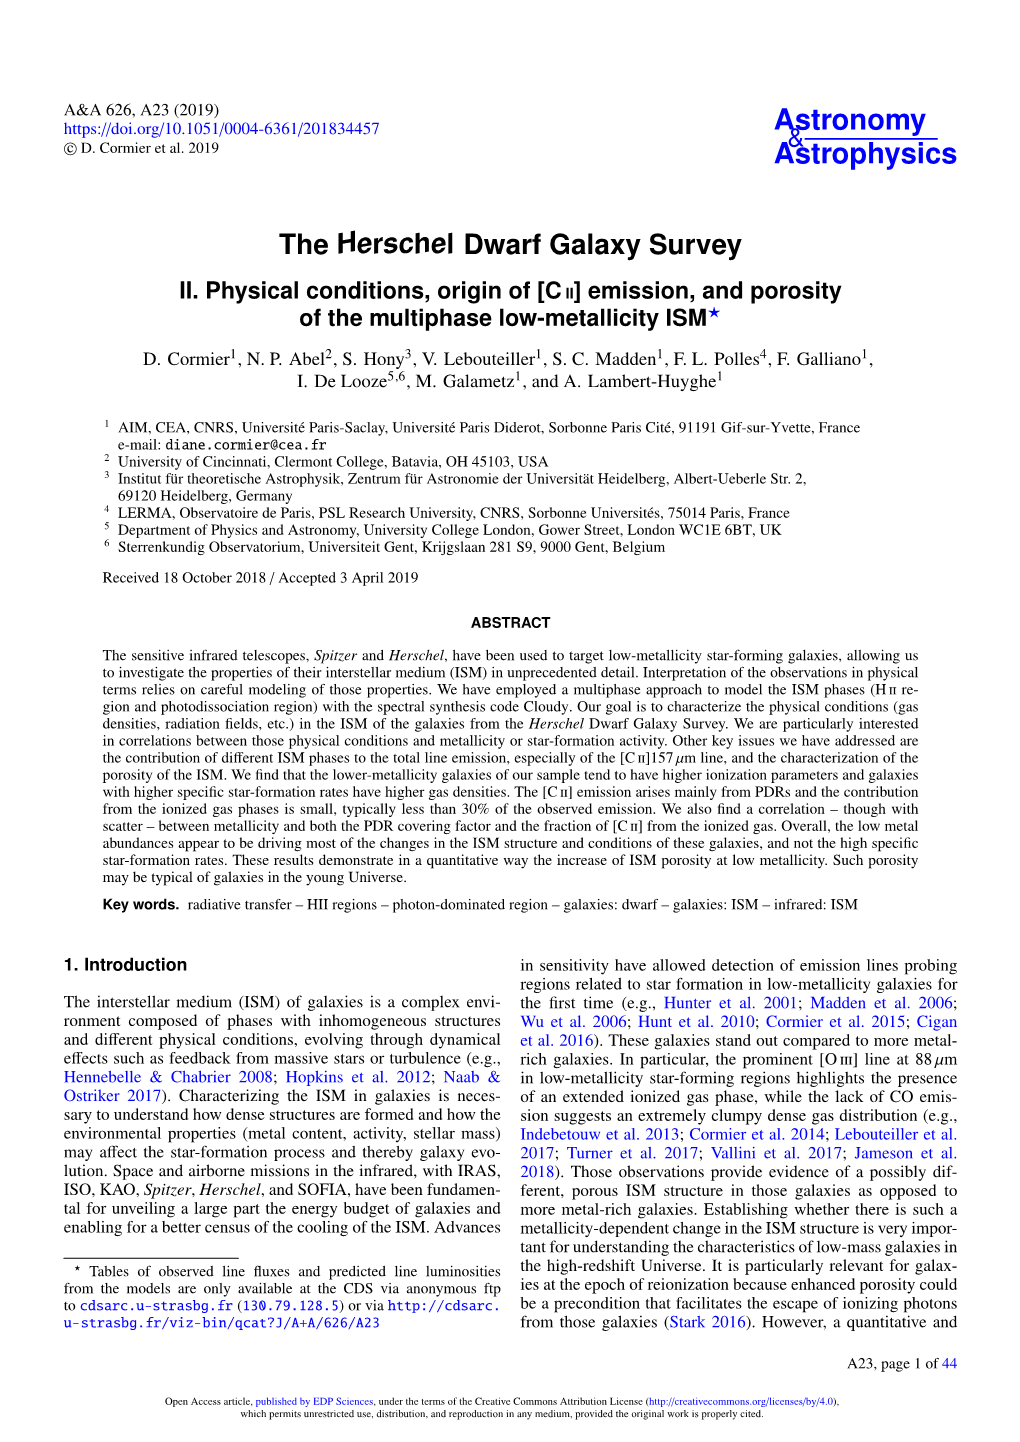 The Herschel Dwarf Galaxy Survey